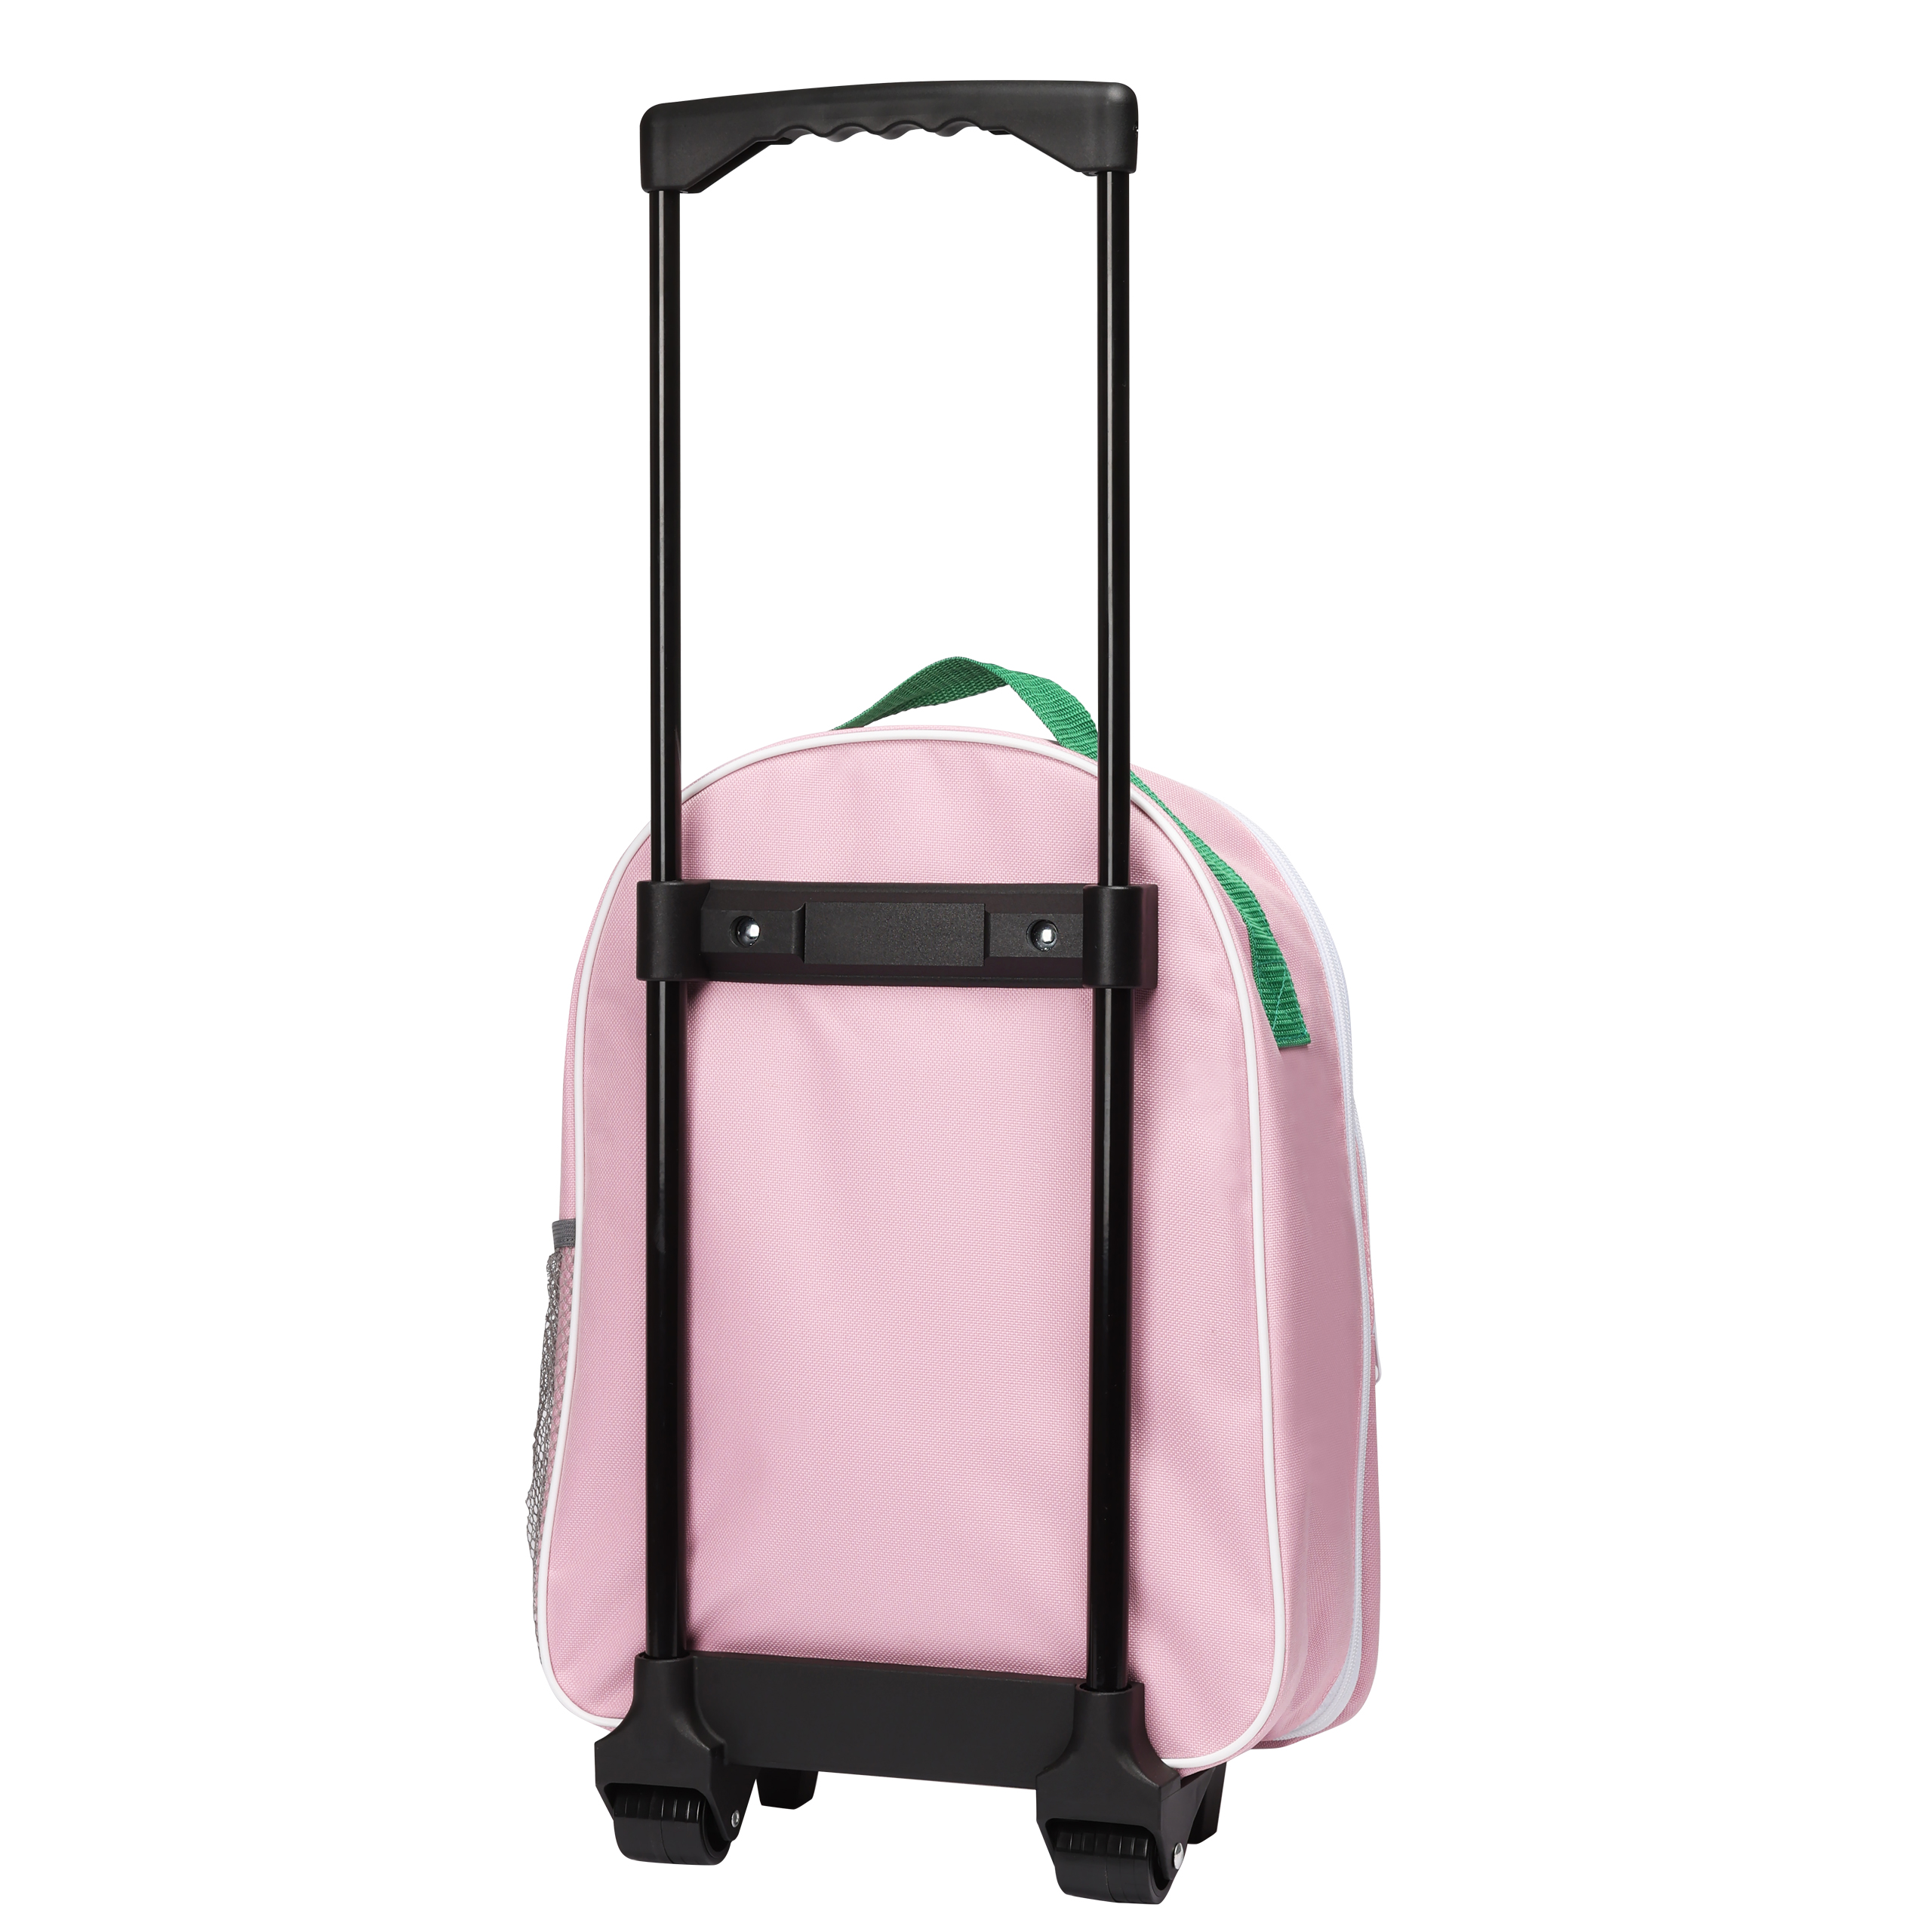 Pippi Longstocking pippi barnevesker trillekoffert rosa